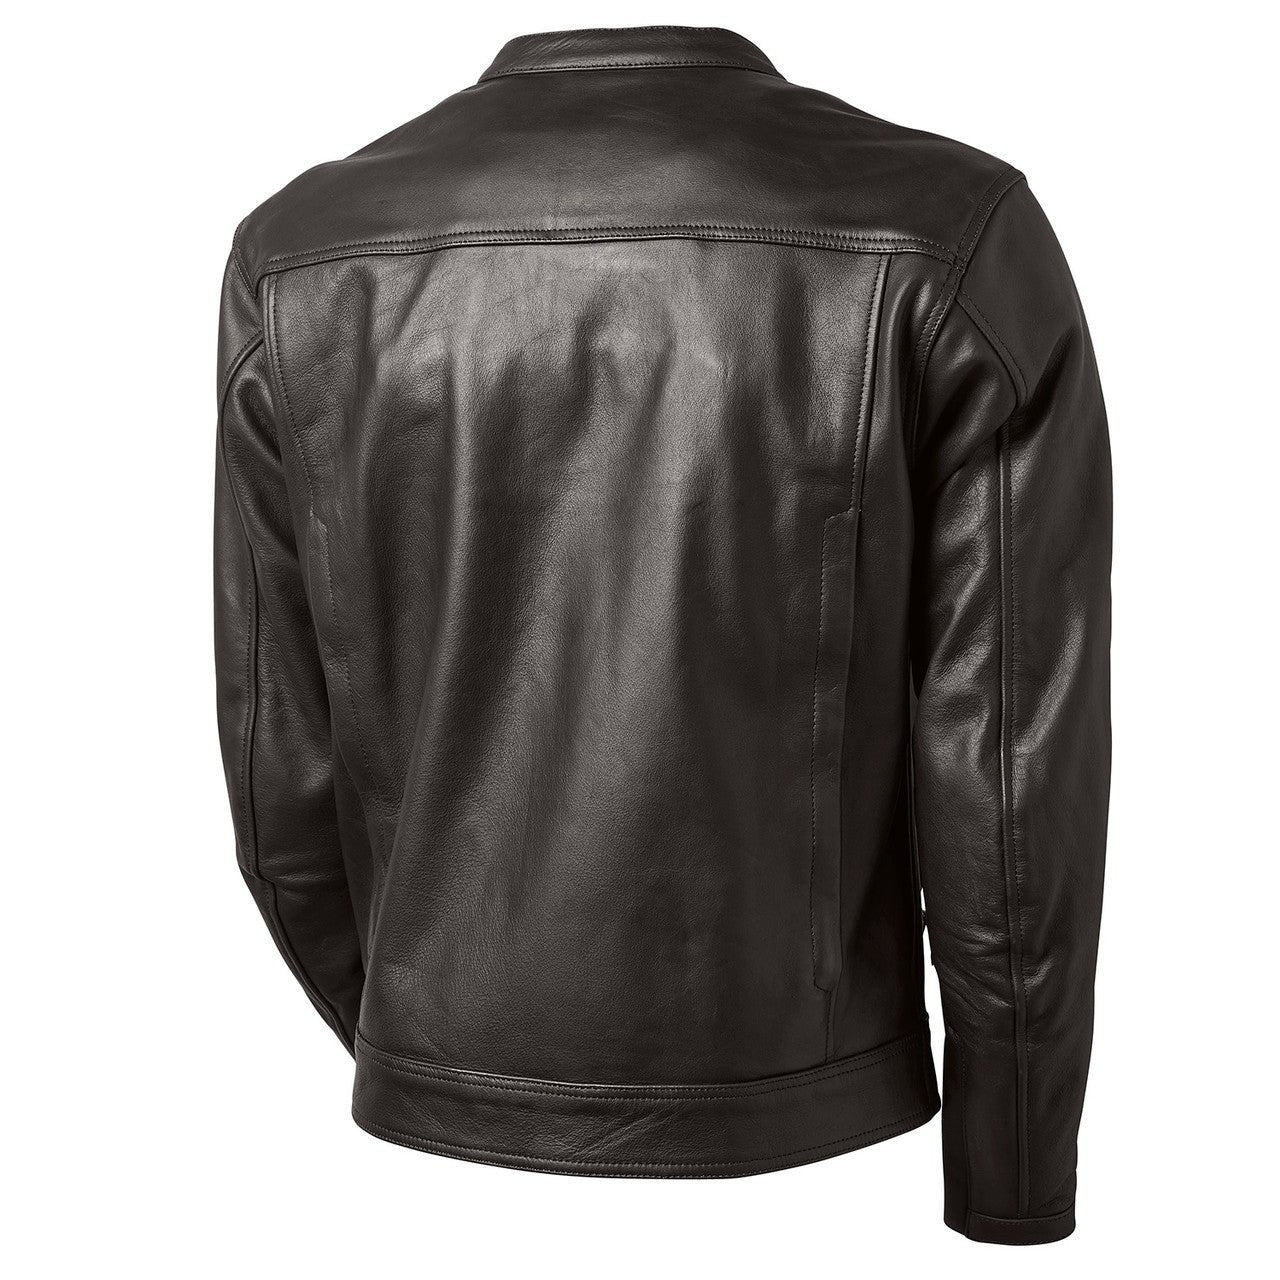 Paramount 74 Leather Jacket